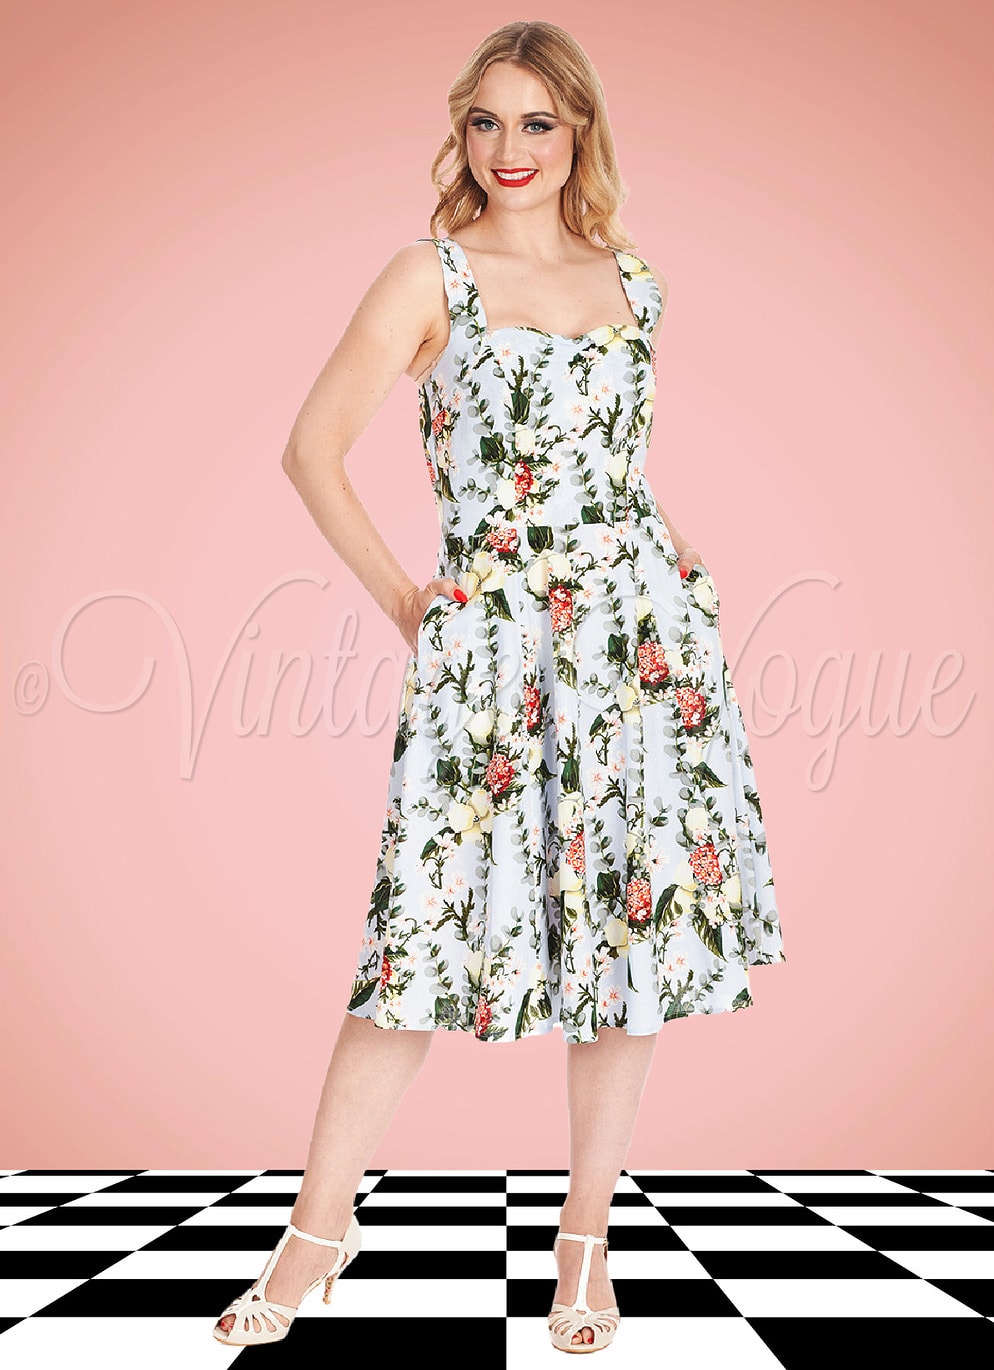 Banned Retro 50's Vintage Pin-Up Floral Kleid Bloom Swing Dress in Hellblau 50er Jahre Petticoat Damenkleid Blumen Rosen Geblümt Hochzeitsgast Sommerkleid